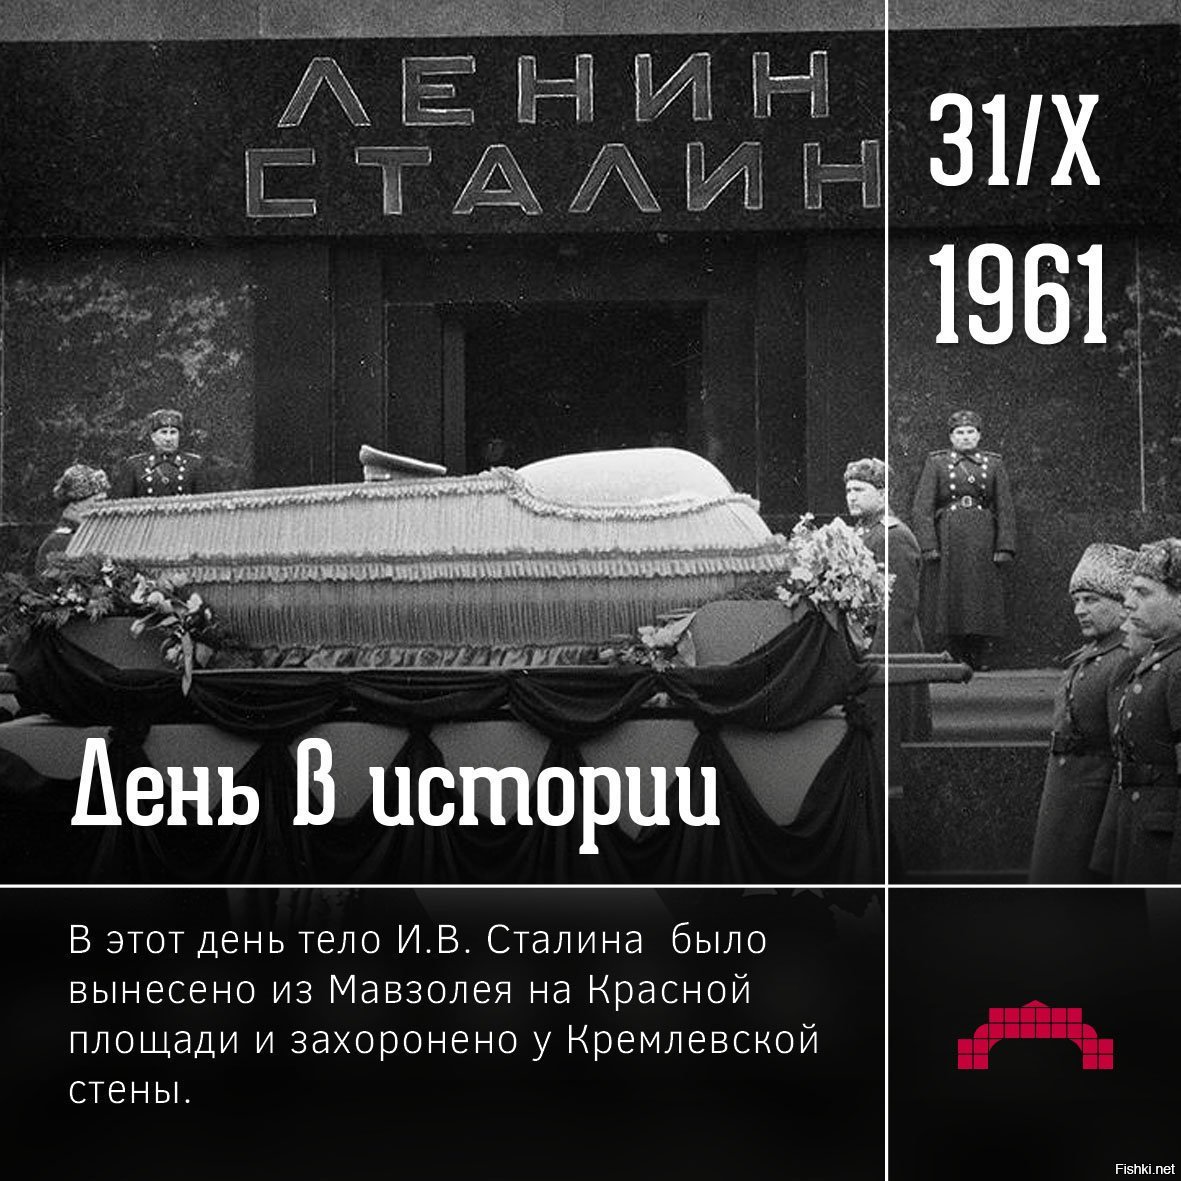 Соперник сталина после смерти ленина. Вынос тела Ленина из мавзолея в 1961. Вынос Сталина из мавзолея 1961. Вынос тела Сталина из мавзолея.